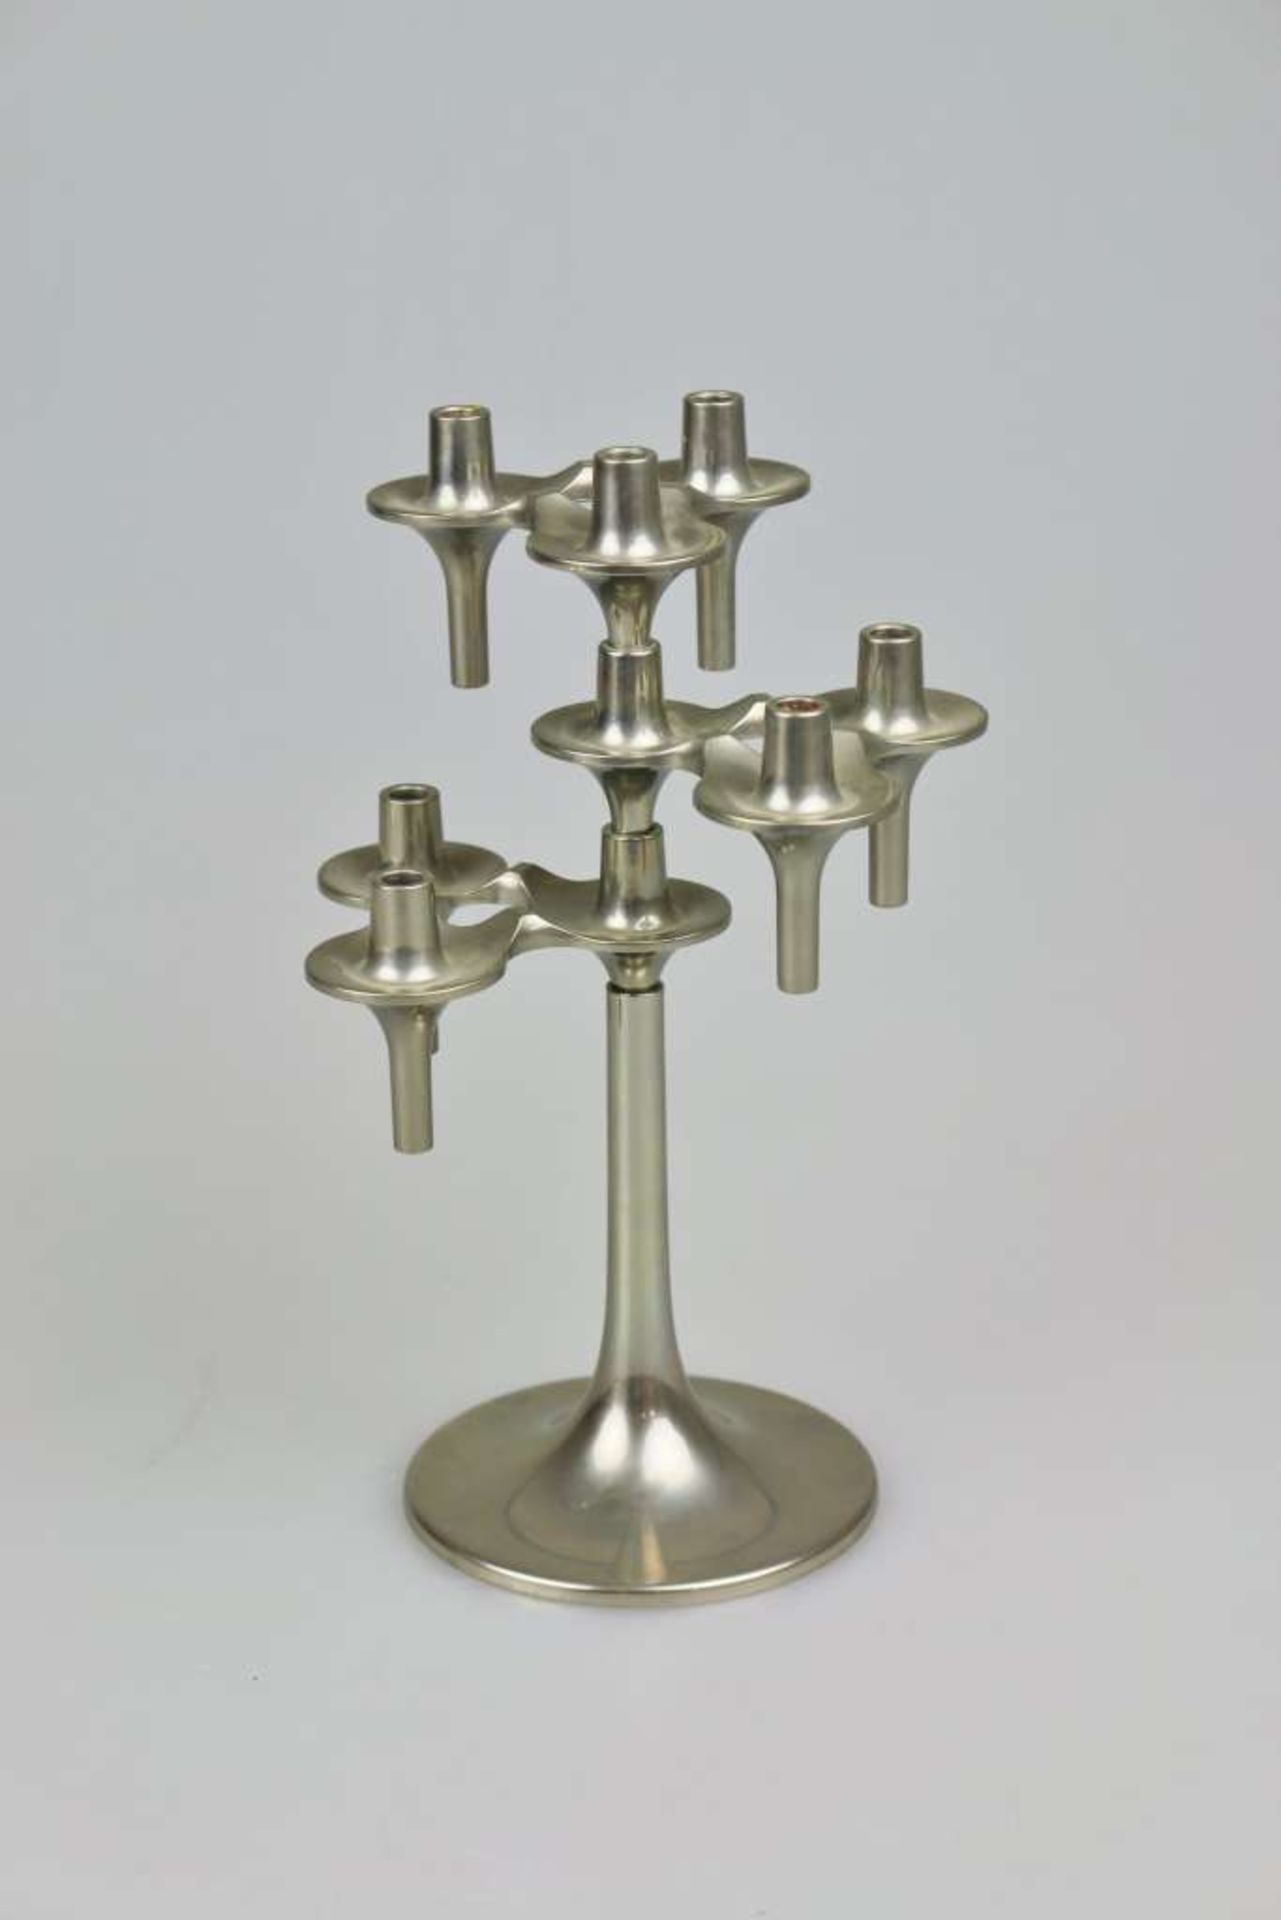 Modularer Orion Kerzenhalter von Fritz Nagel &amp; Ceasar Stoffi für BMF, 1960er bis 1970er, d